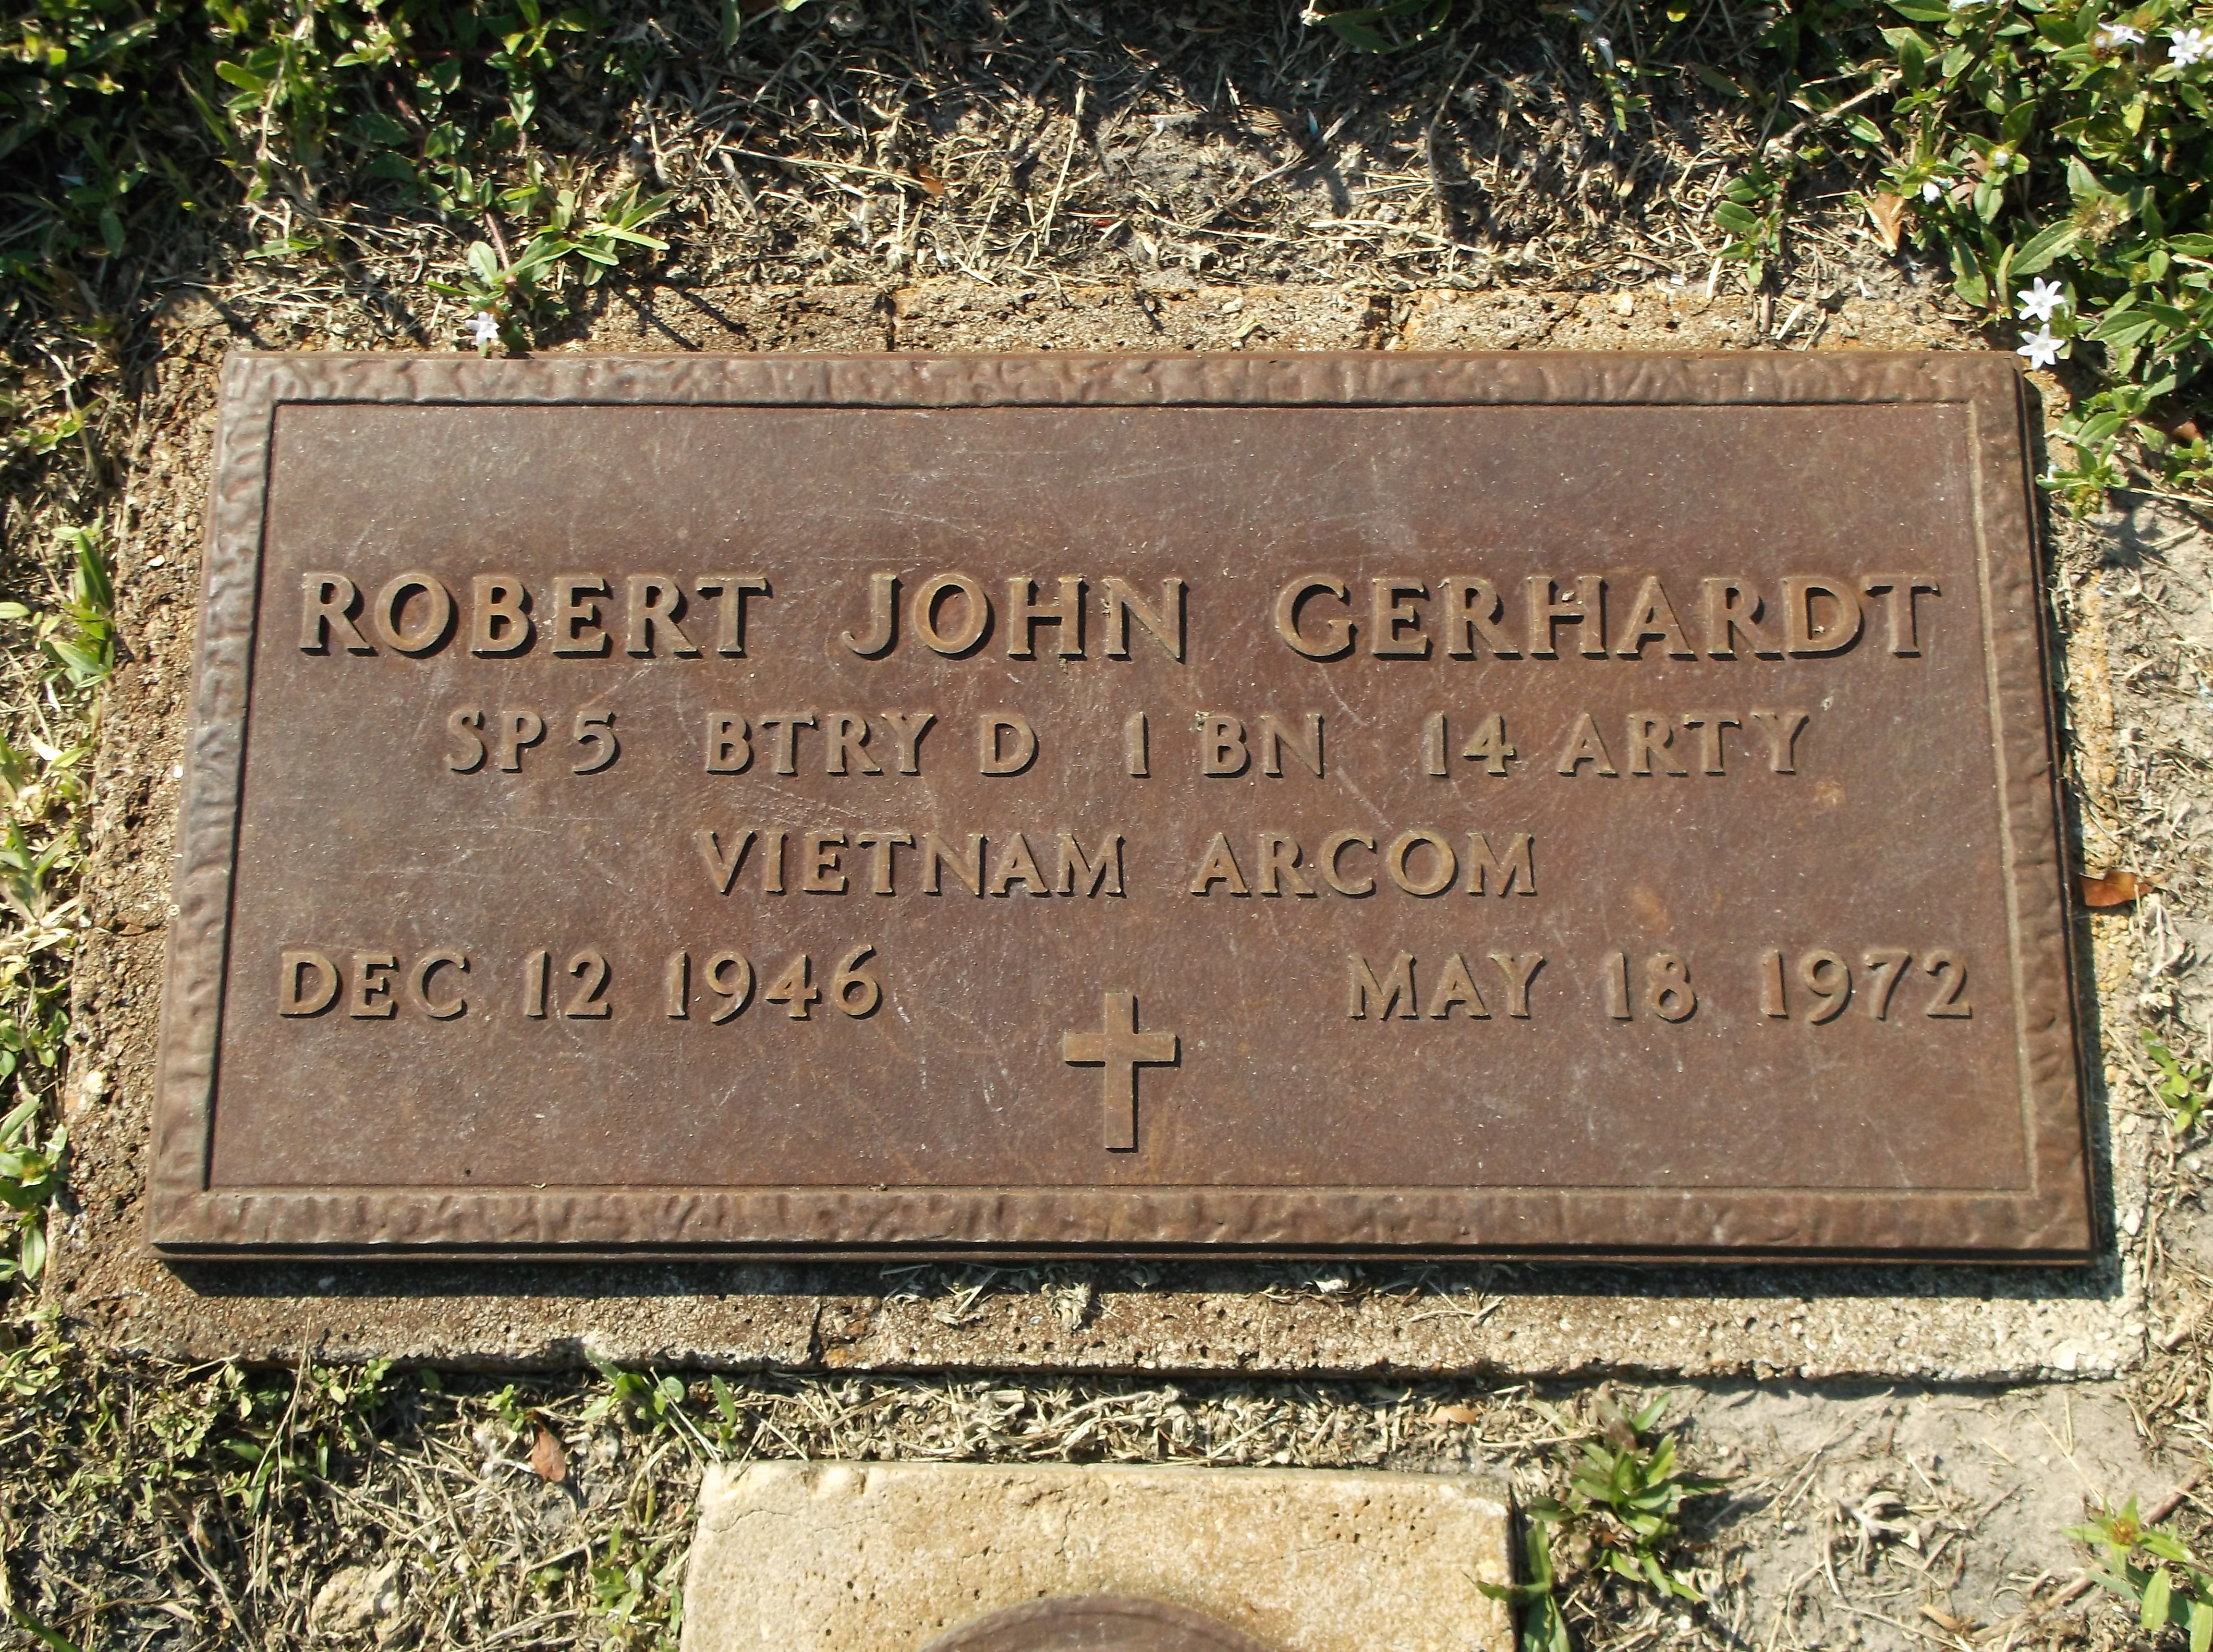 Robert John Gerhardt